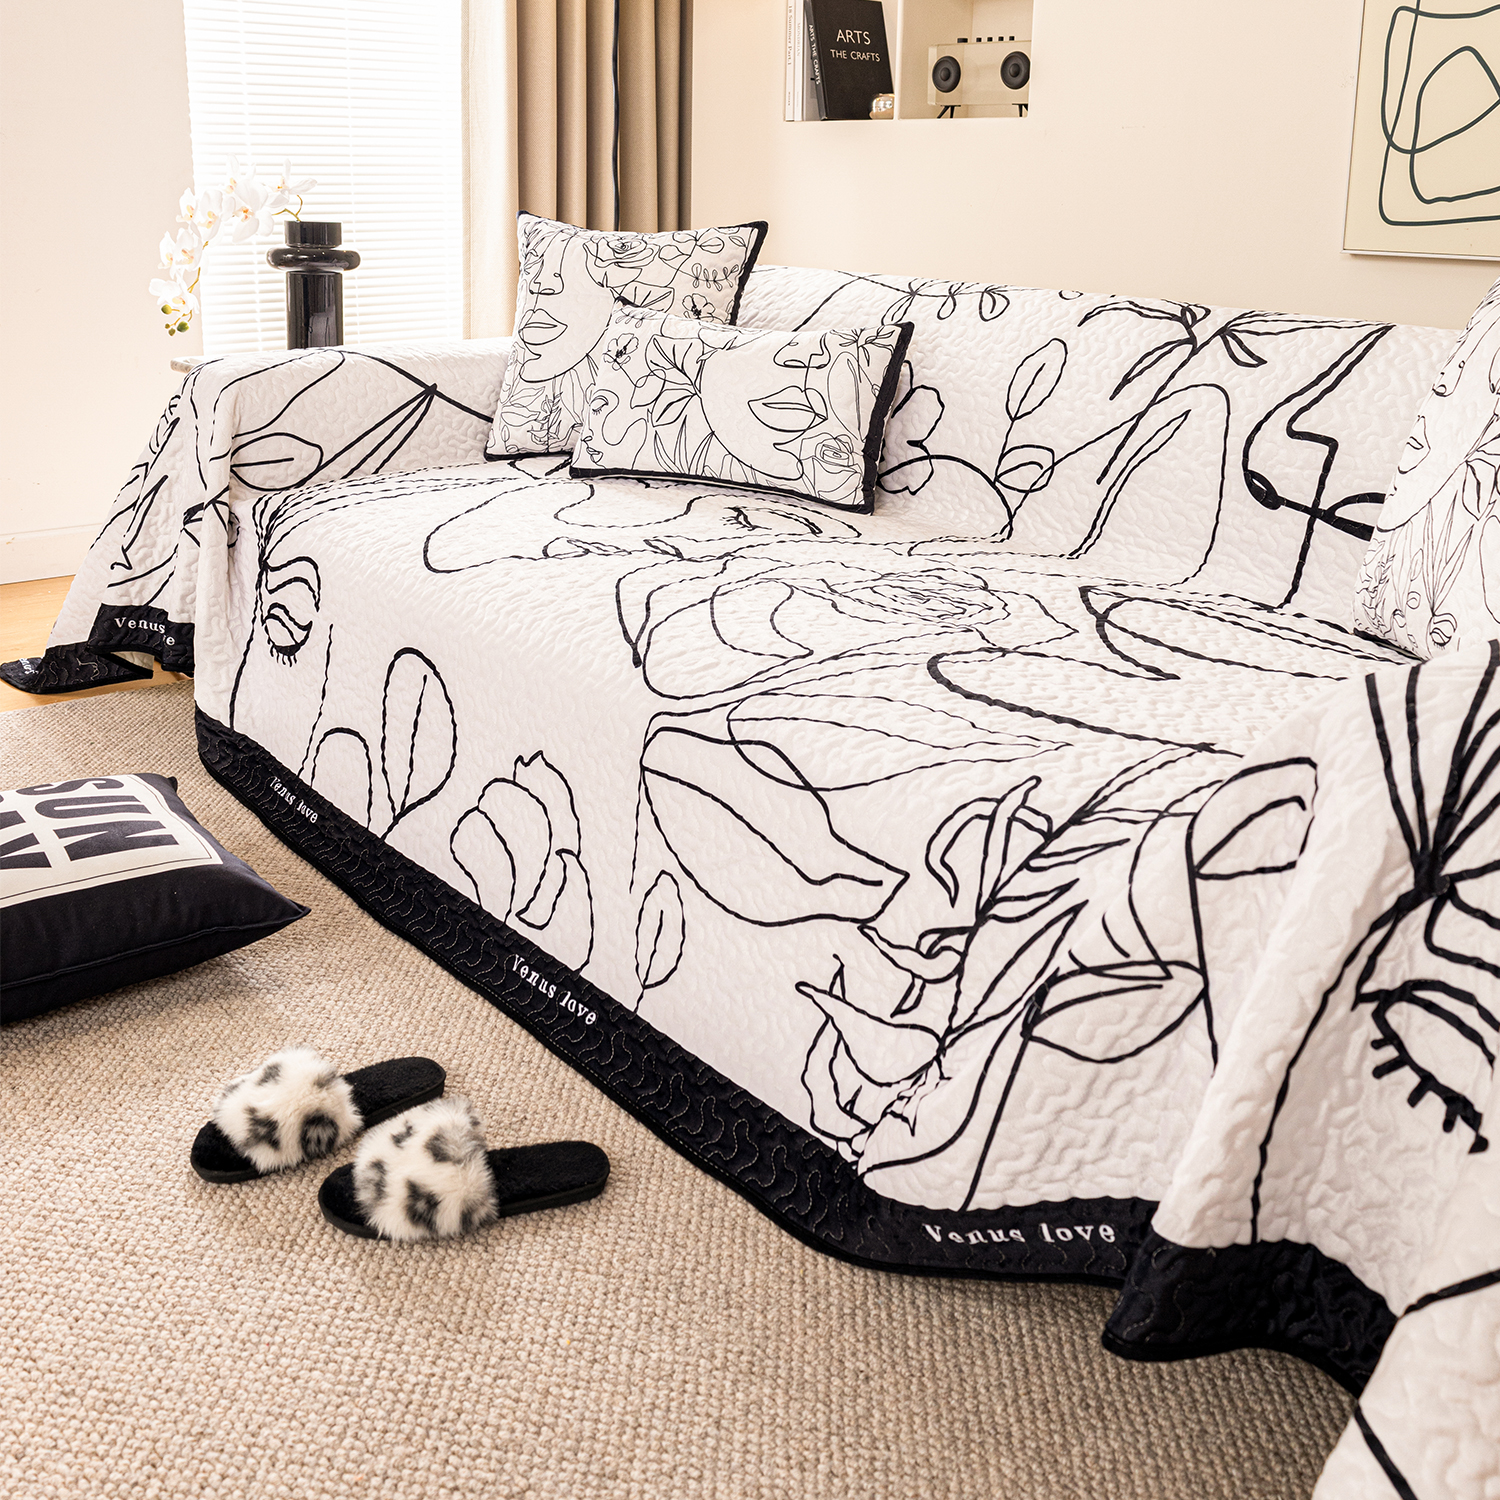 羽蔓家 维纳斯 北欧抽象美学四季通用沙发巾全铺盖布客厅沙发套罩